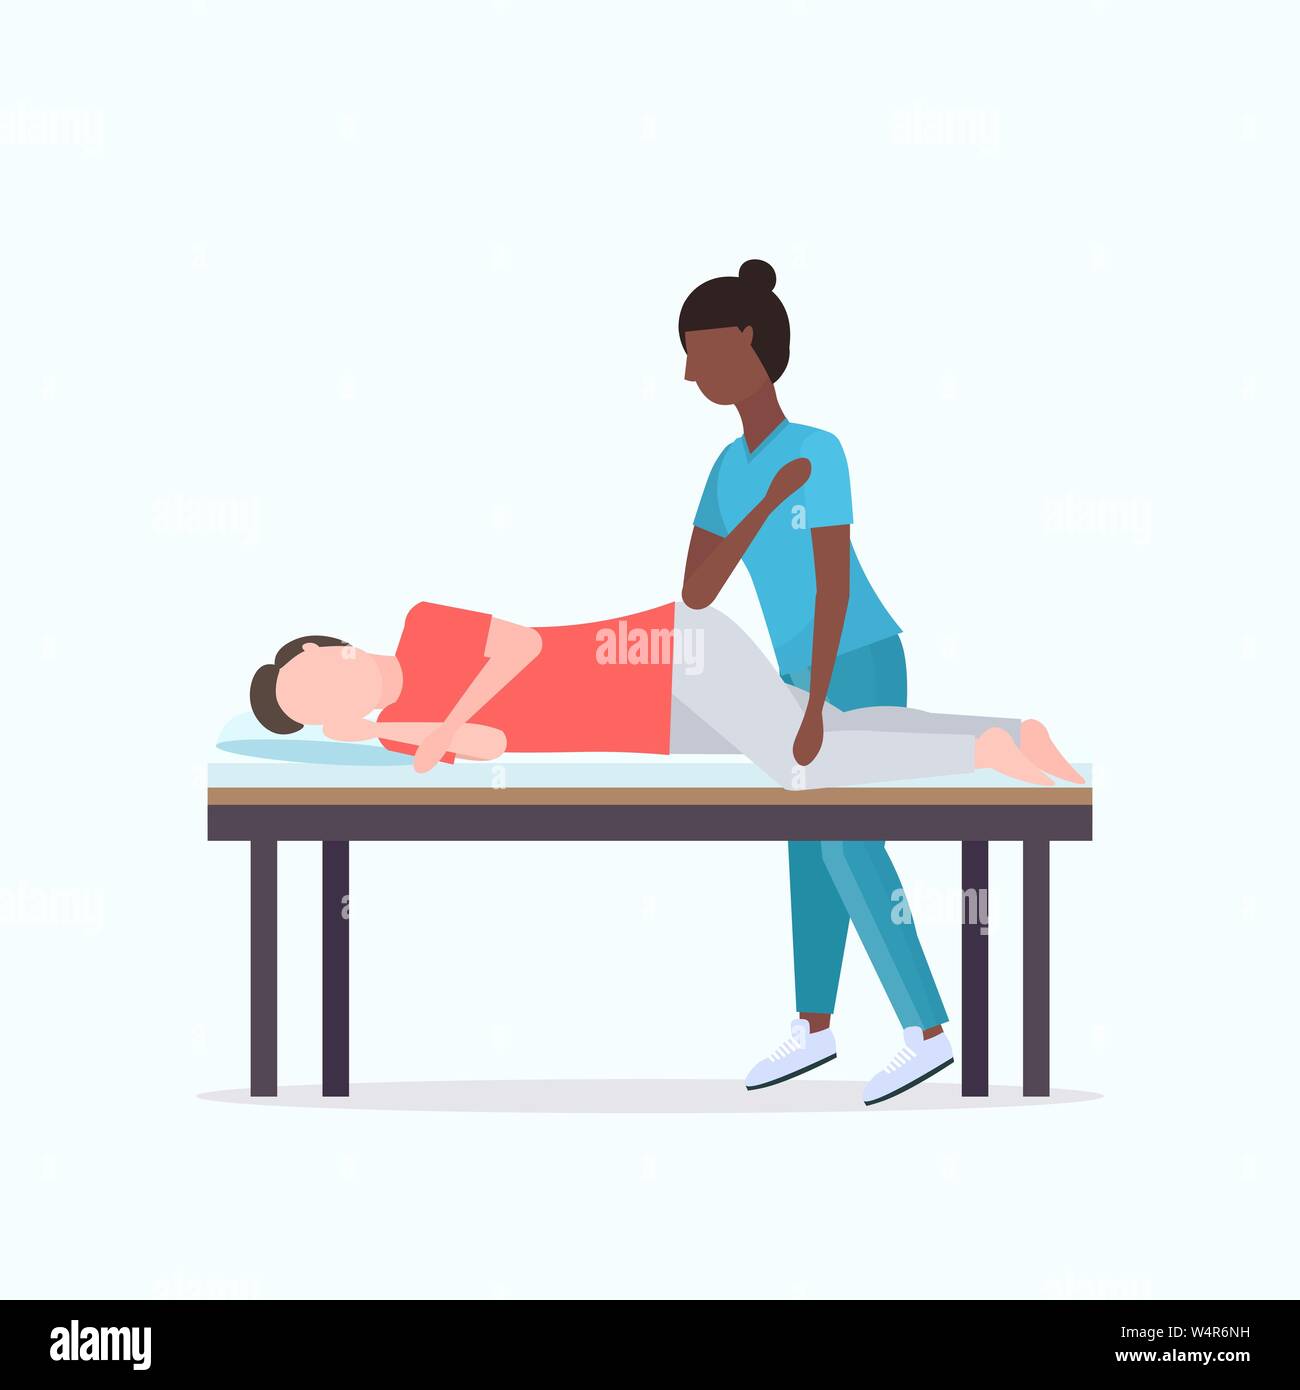 Guy liegen auf Massage bed afrikanische amerikanische Masseurin Therapeut tun Heilung massieren der verletzte Patient Handbuch sport Physikalische Therapie Stock Vektor